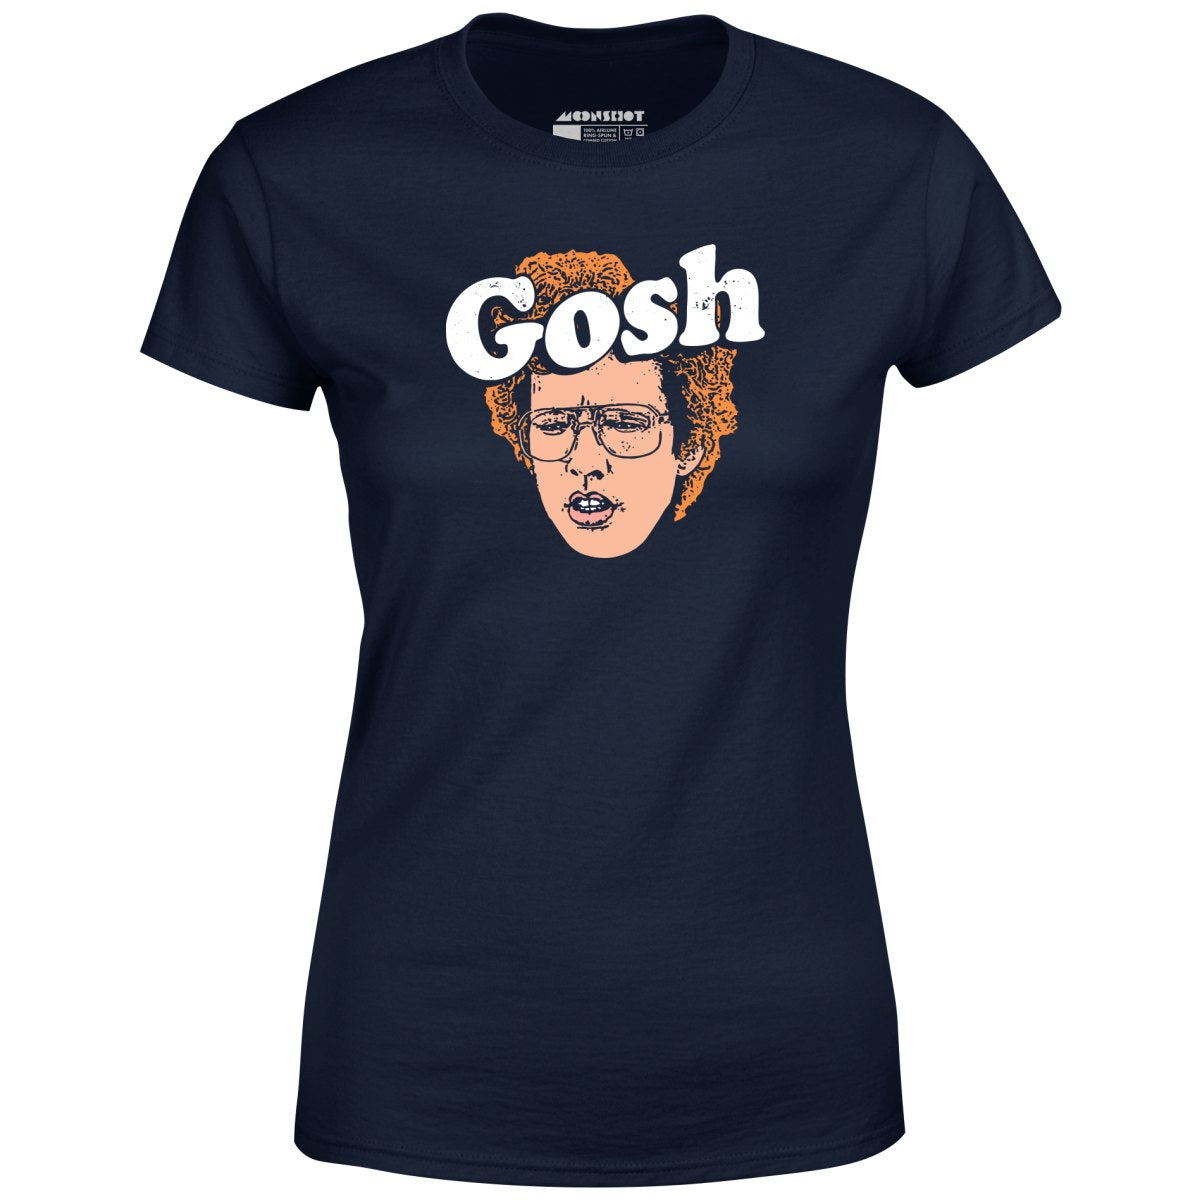 Gosh - Women's T-Shirt